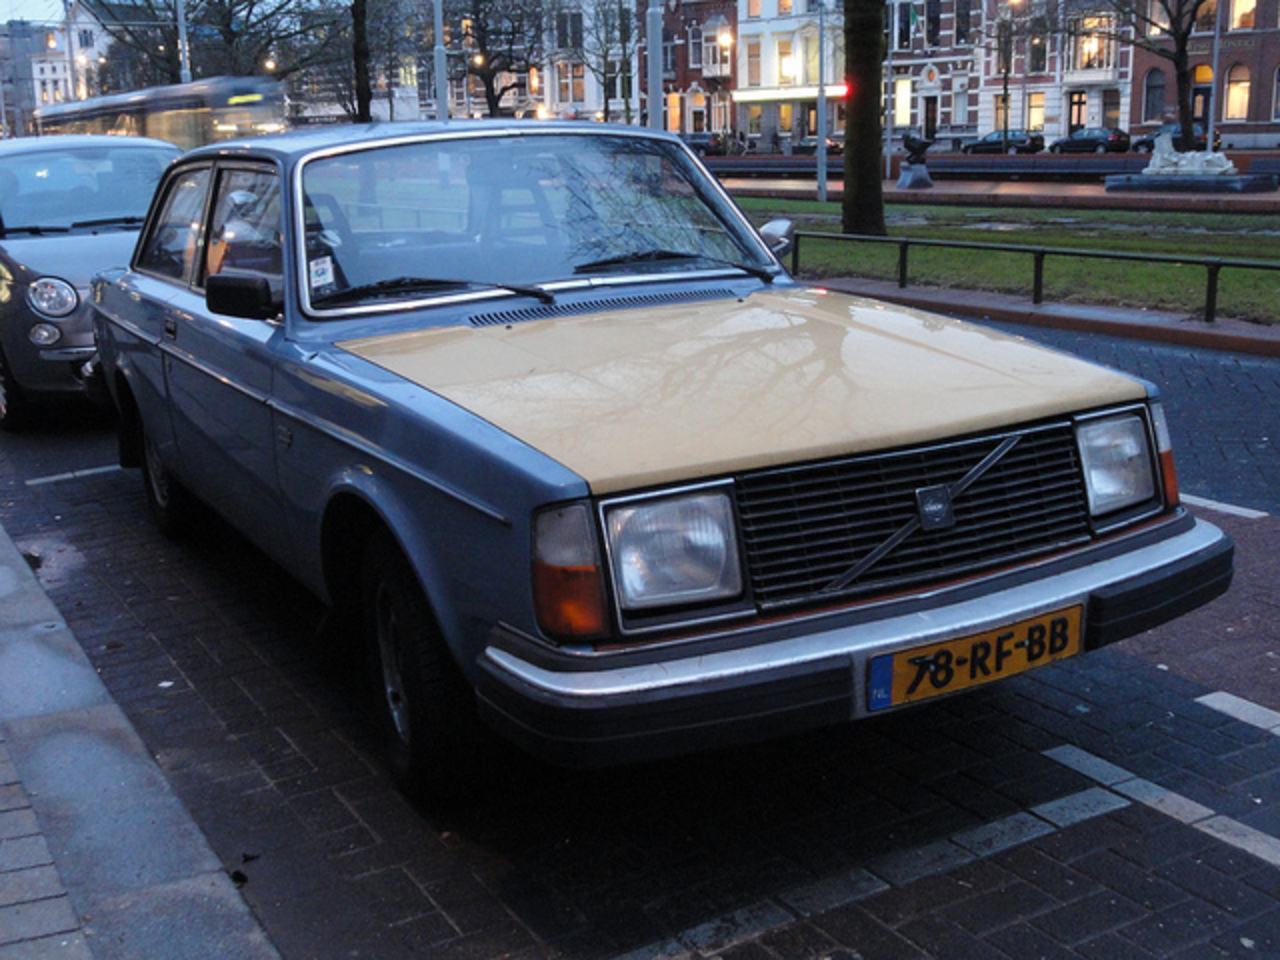 1979 Volvo 242 DL | Flickr - Photo Sharing!